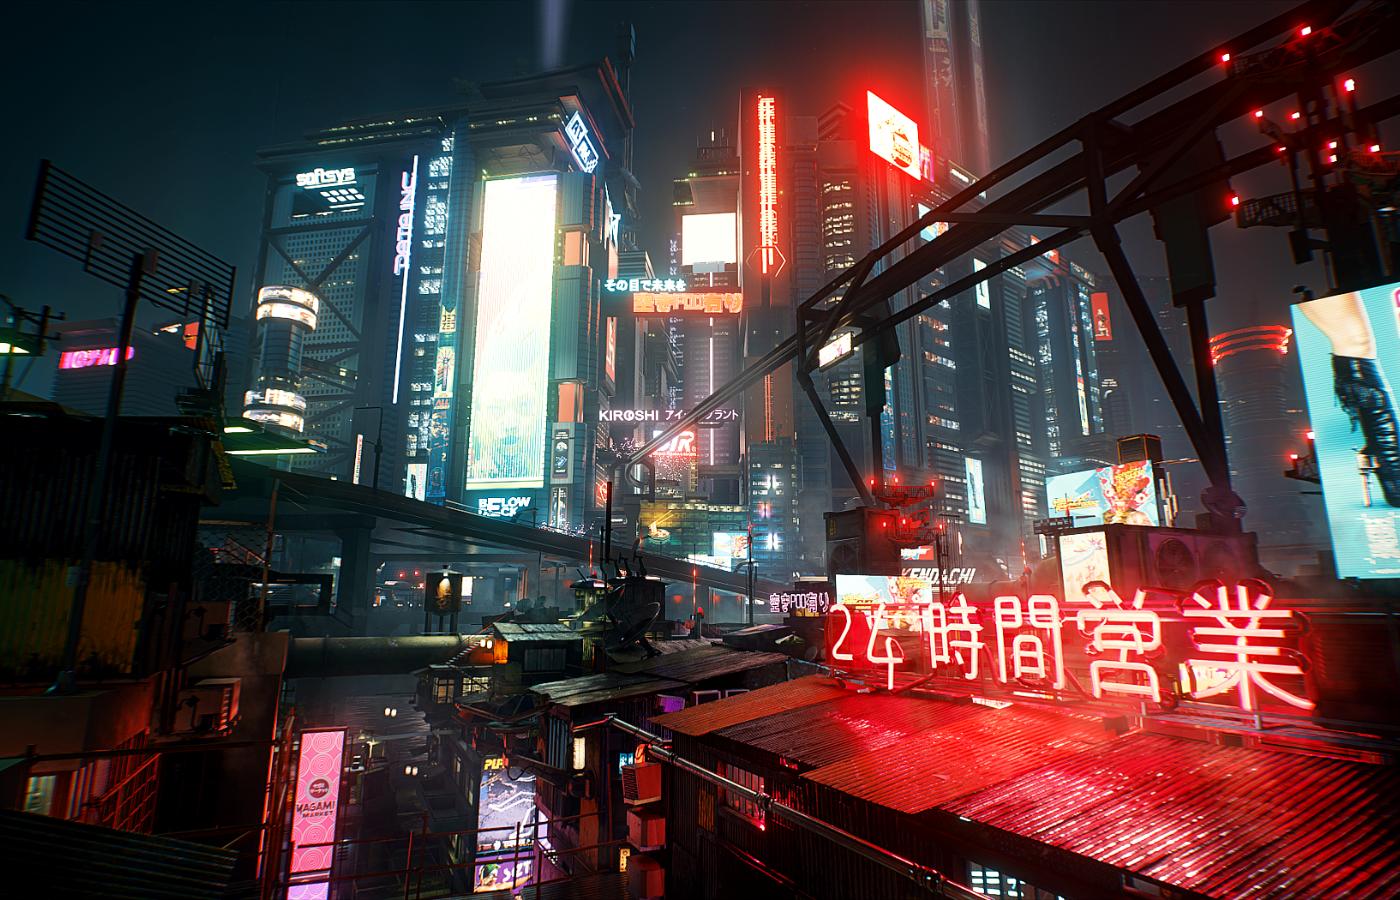 Kadr z gry „Cyberpunk 2077”